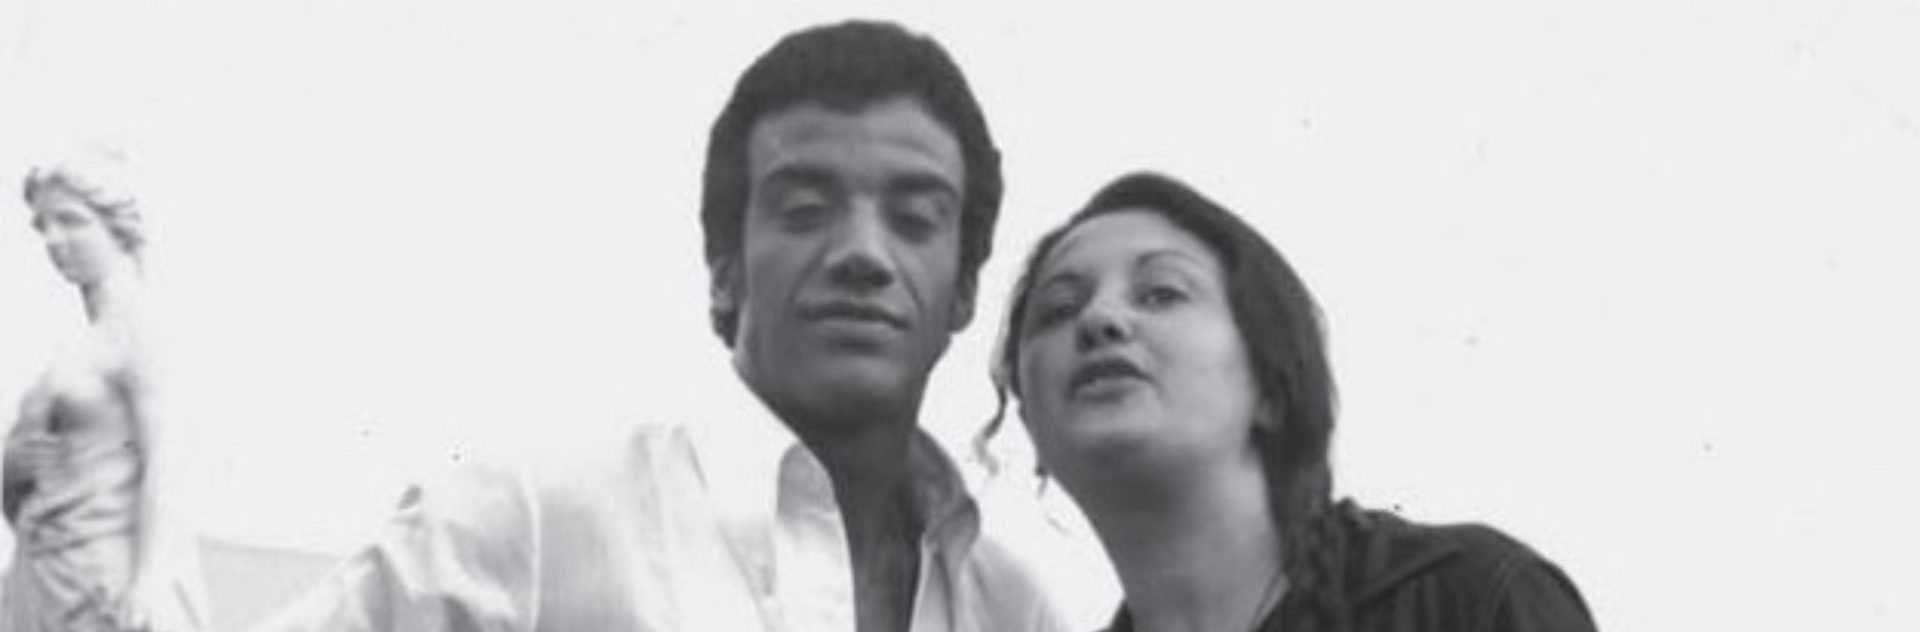 18a CineOP: Inédito há décadas, comédia “Uma Nêga Chamada Tereza”, de 1973, foi exibida na mostra, com Jorge Ben em papel duplo e cortes da censura militar